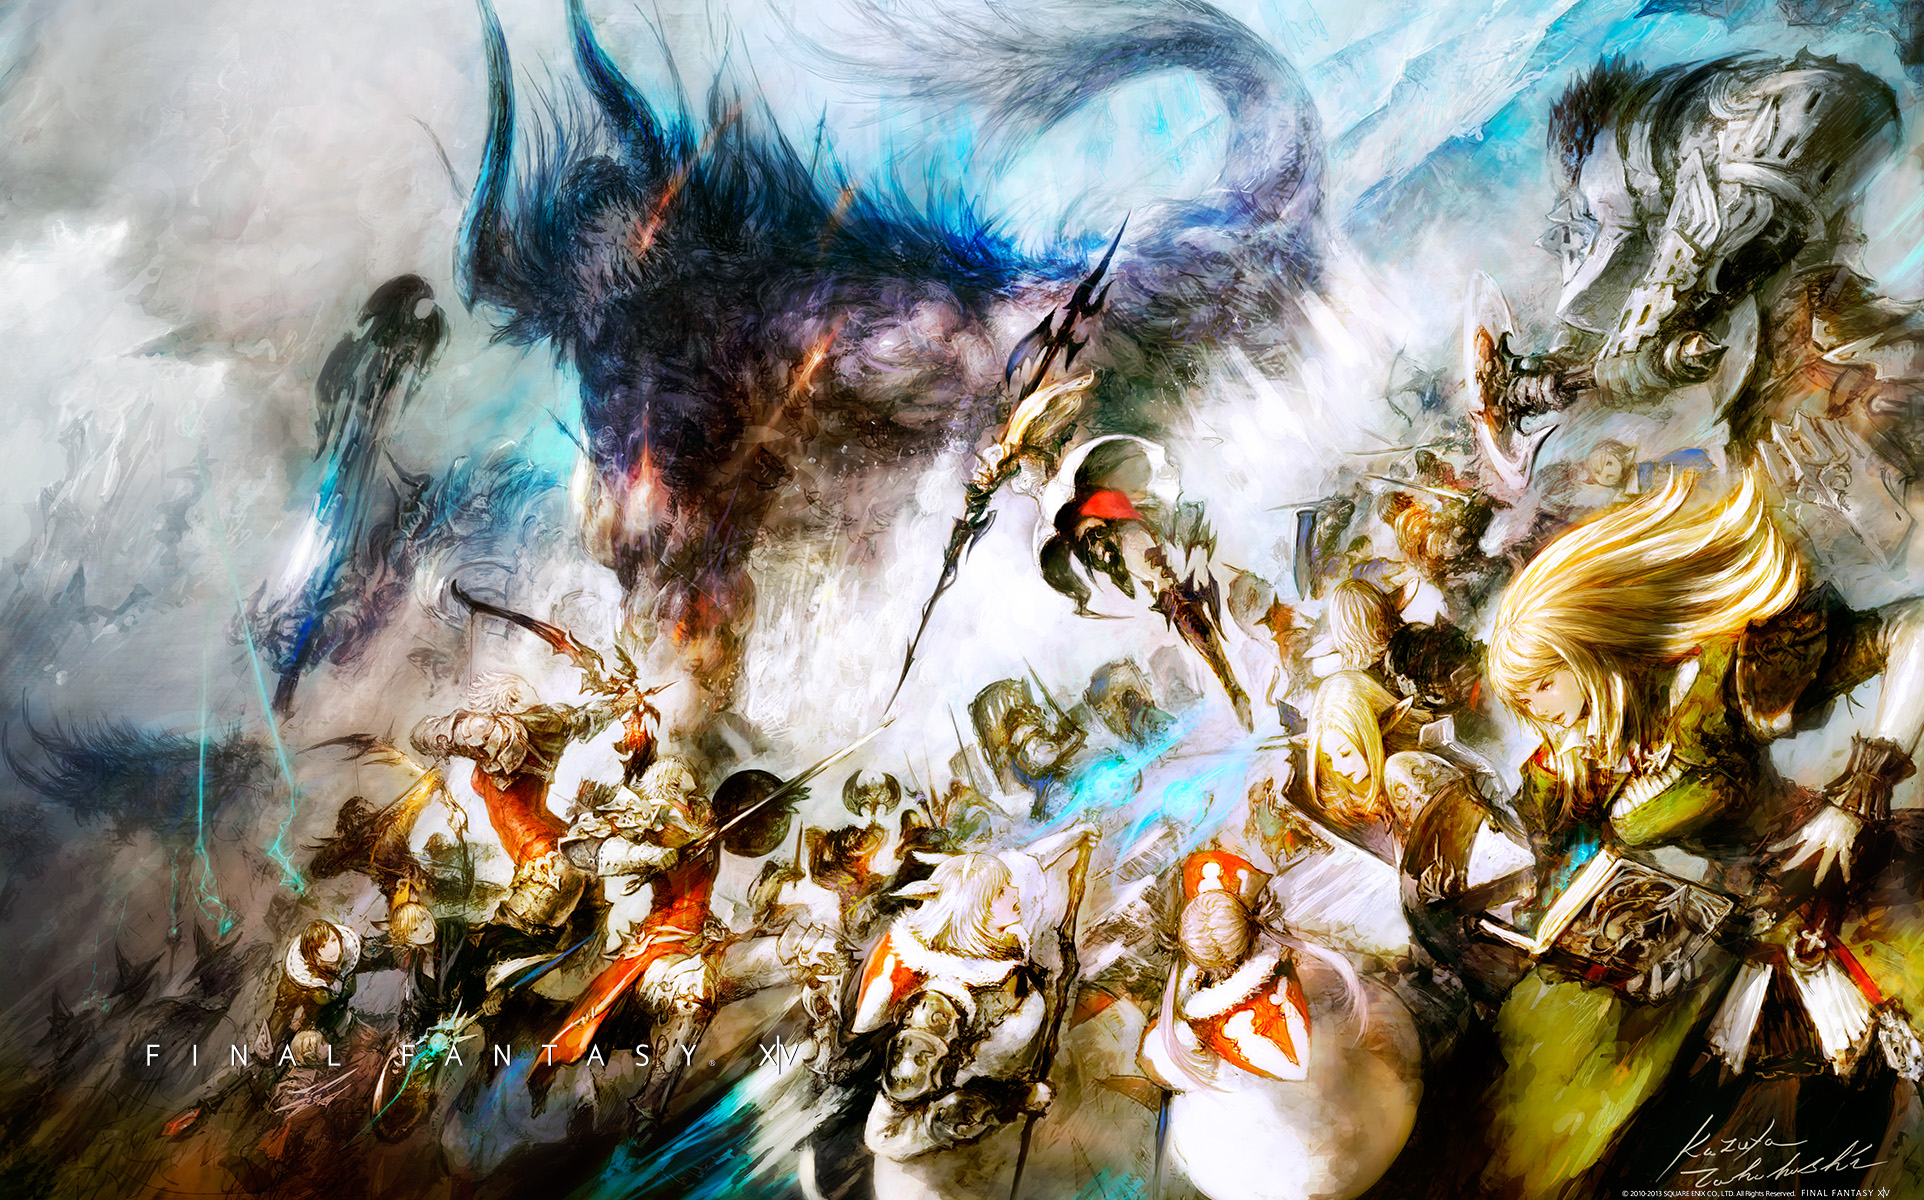 Final Fantasy Xiv A Realm Reborn Wallpaper The Wiki